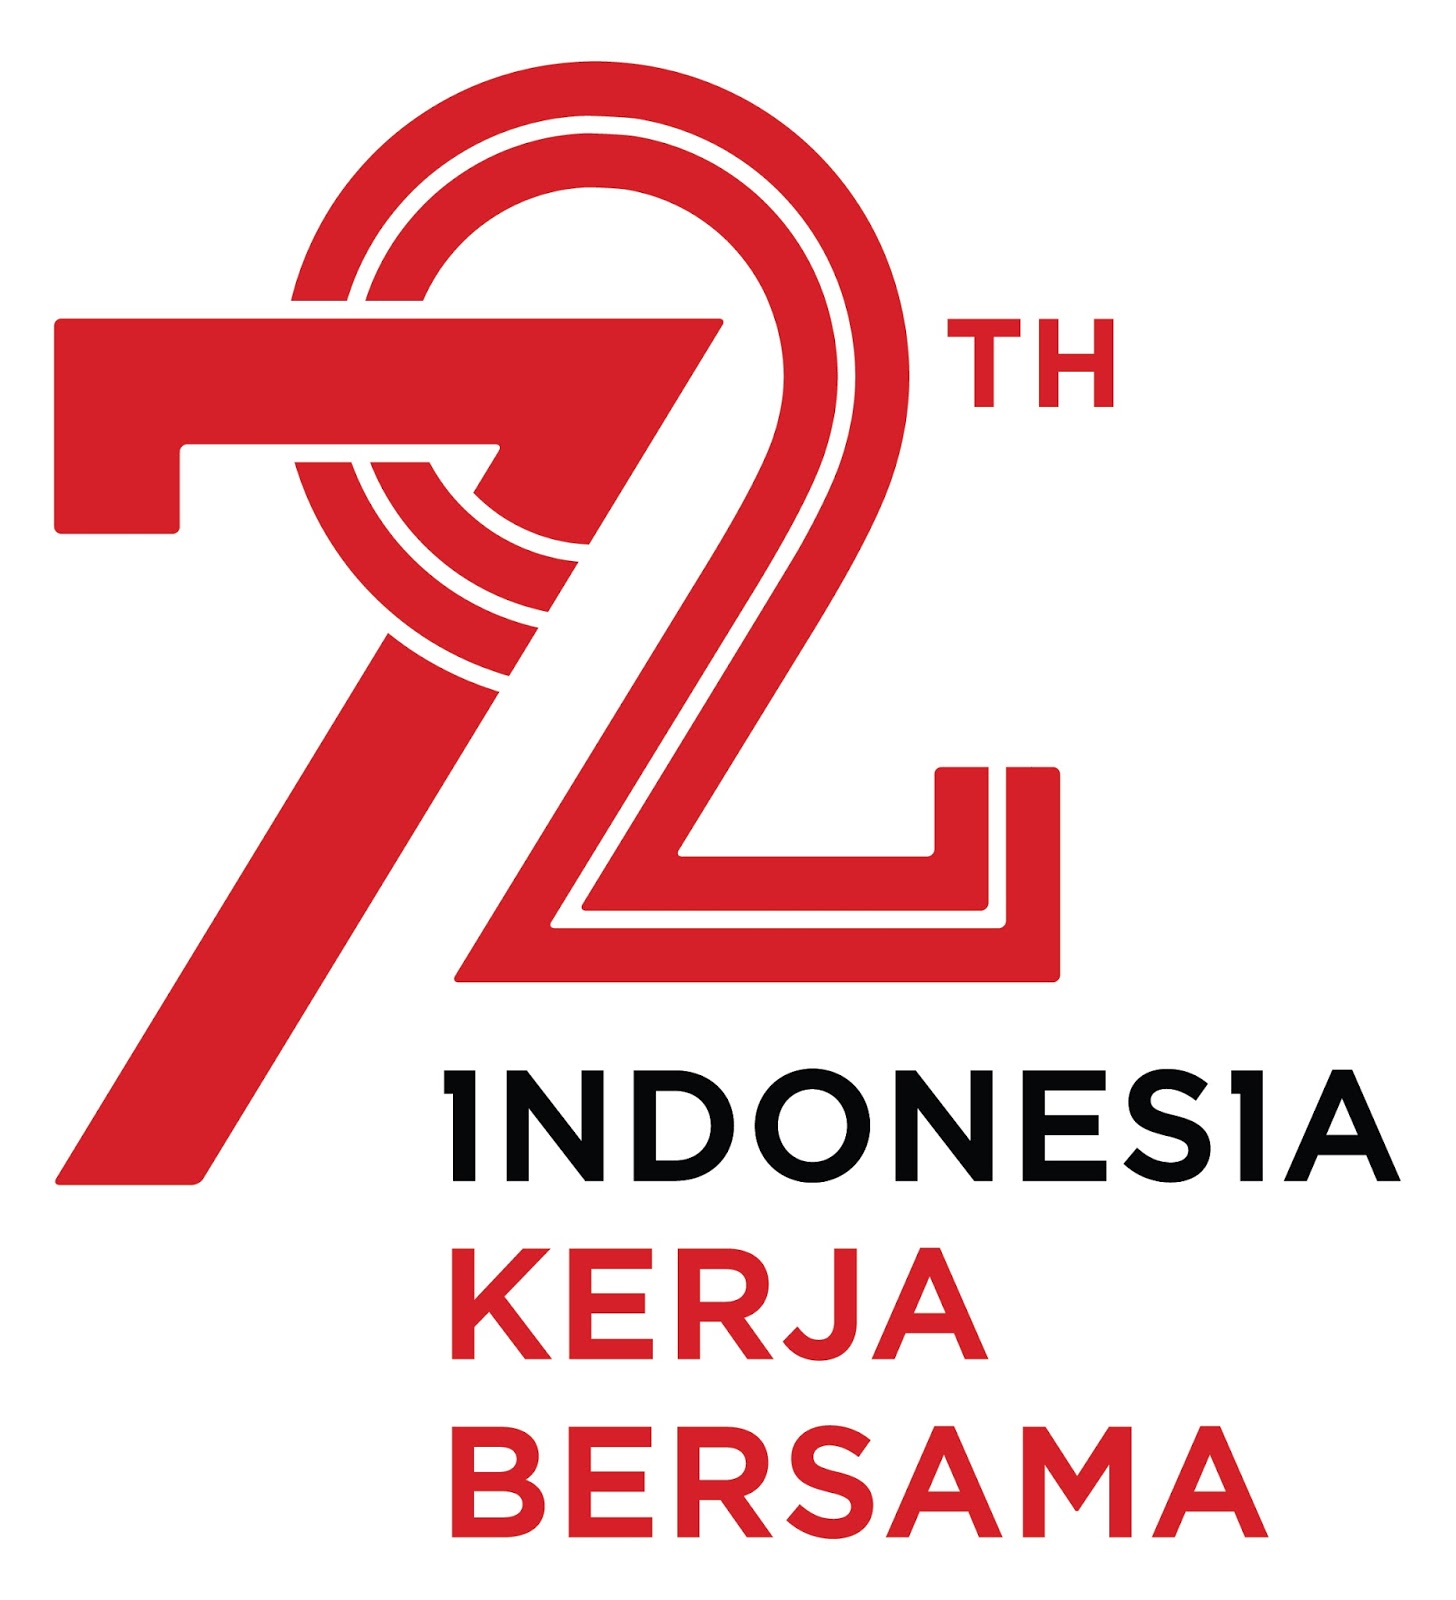 HUT Republik Indonesia